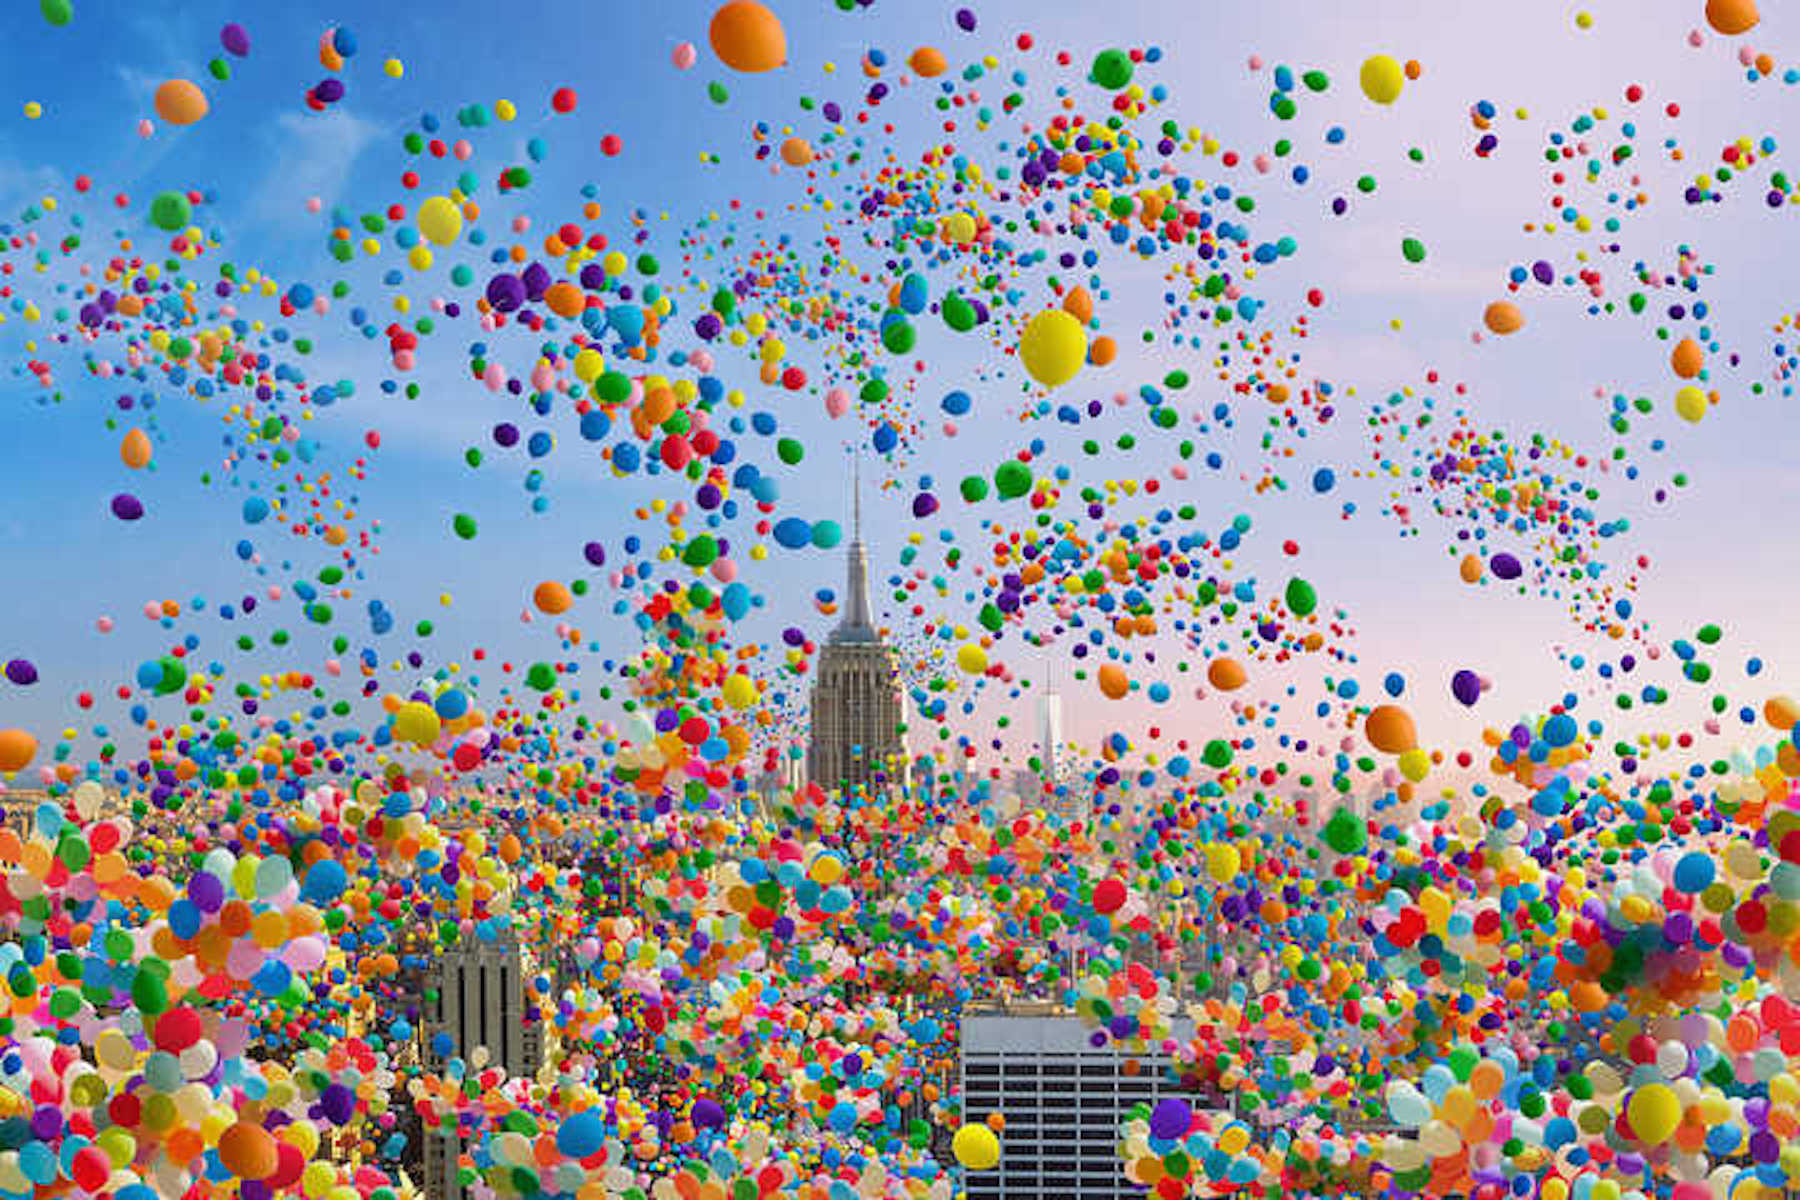     © Robert Jahns, NYC Balloons II, 2017

